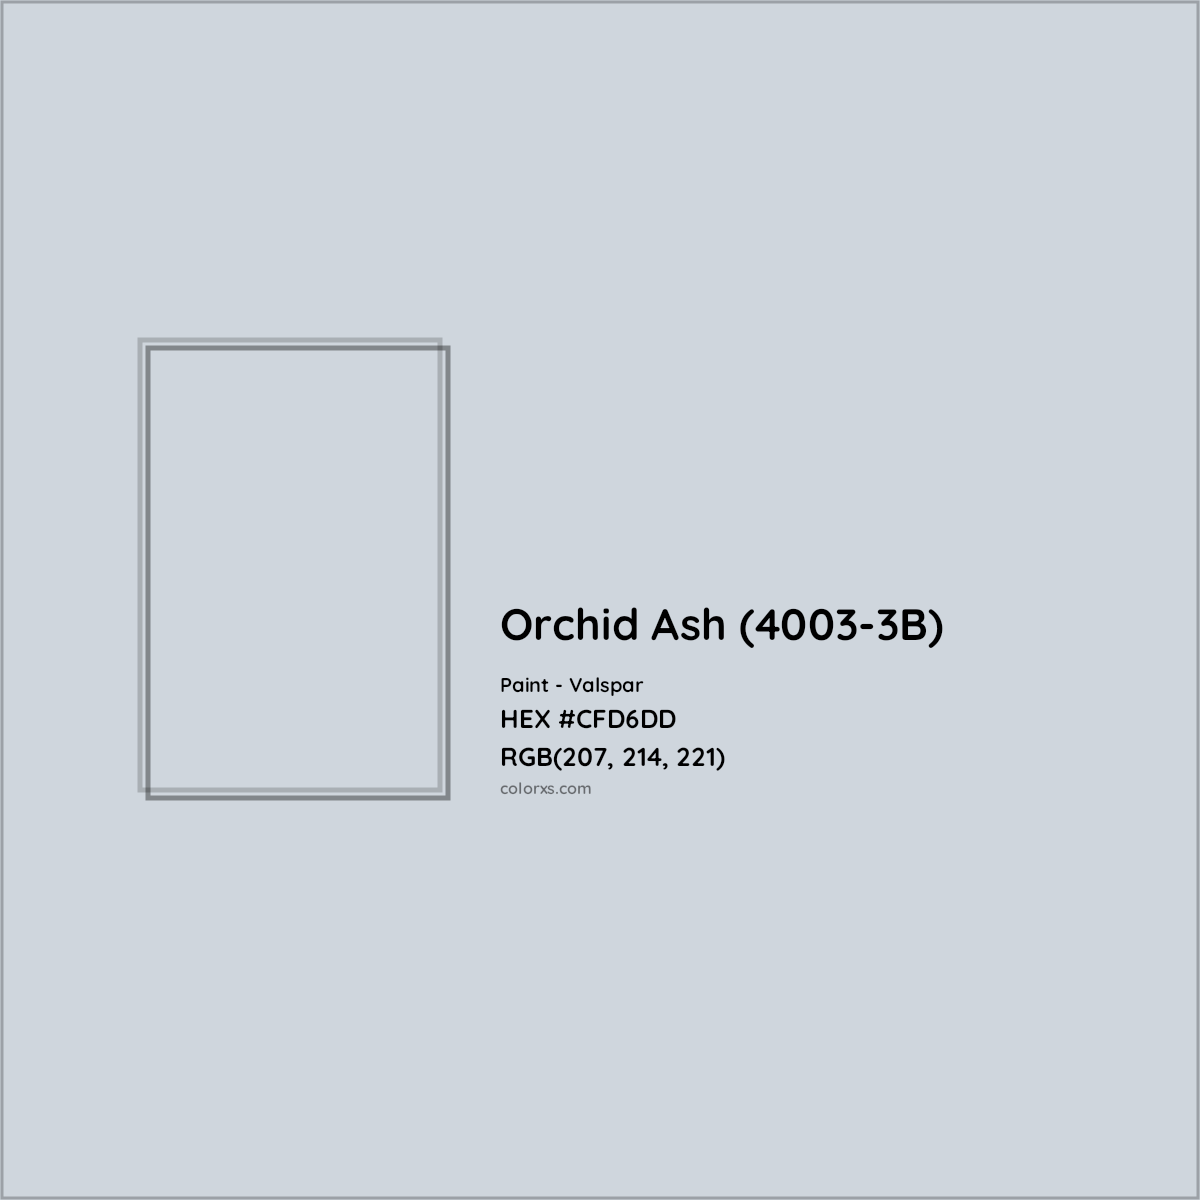 HEX #CFD6DD Orchid Ash (4003-3B) Paint Valspar - Color Code